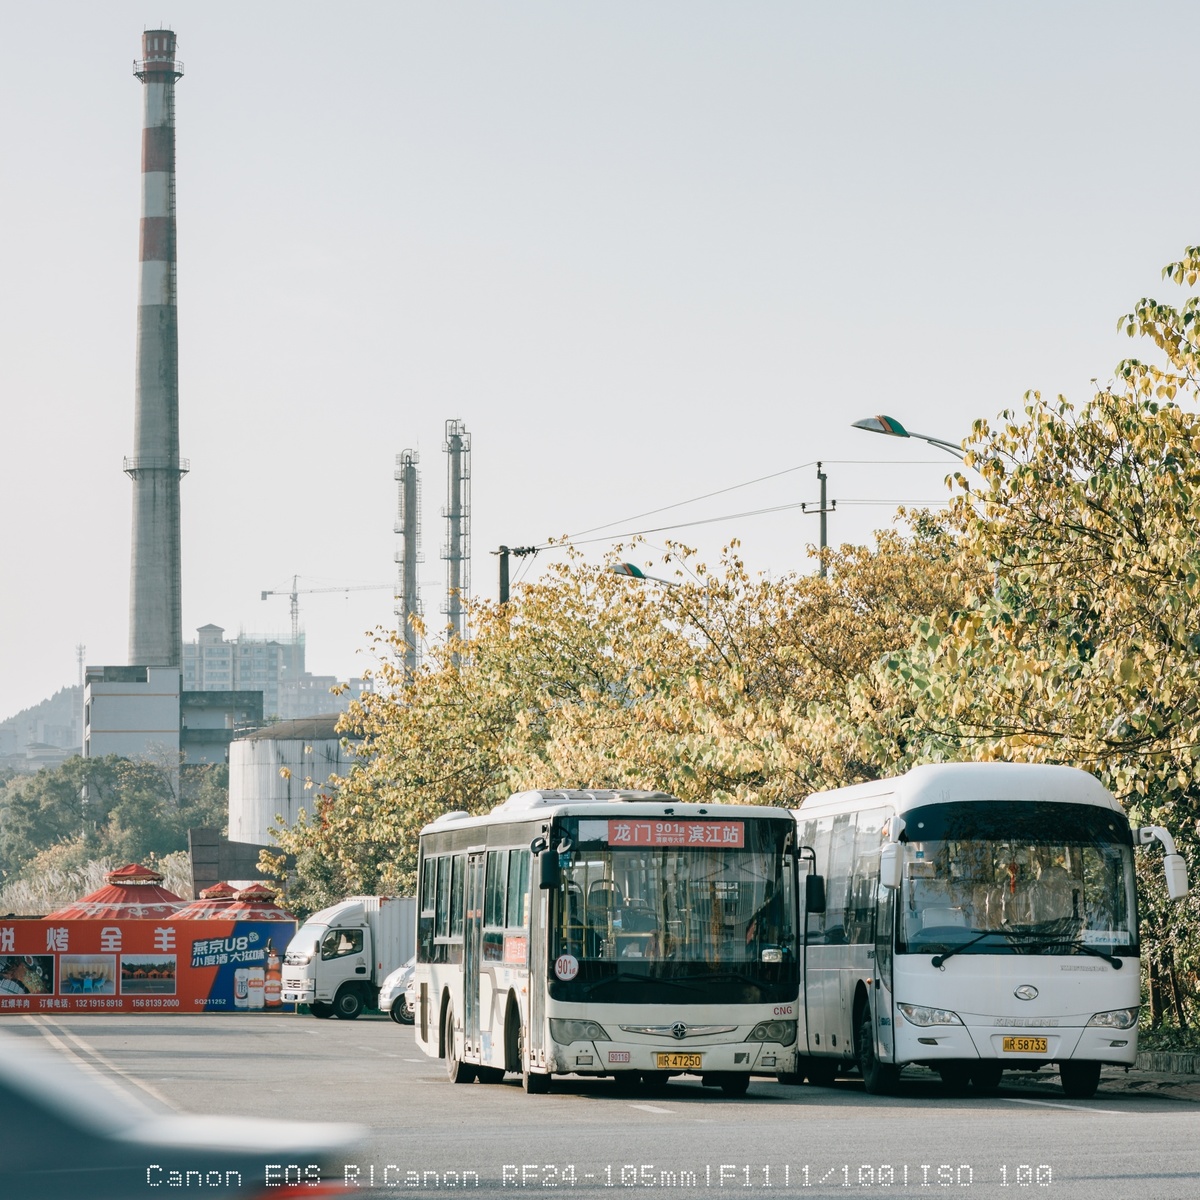 一辆白色公交车在靠近工厂的道路上行驶 道路上还有其他交通。